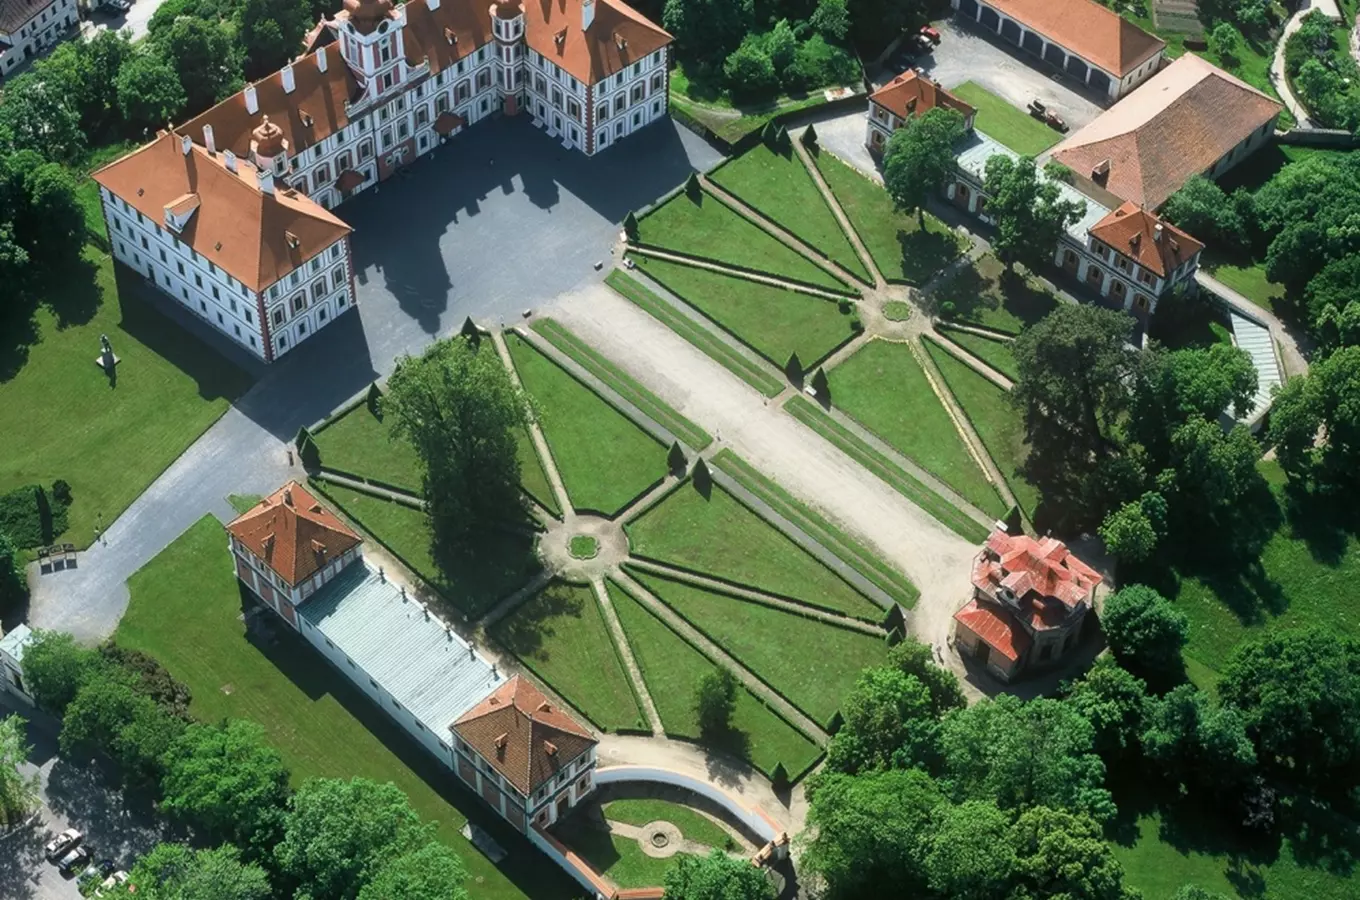 Zákulisí zámeckého divadla zámku Mnichovo Hradiště